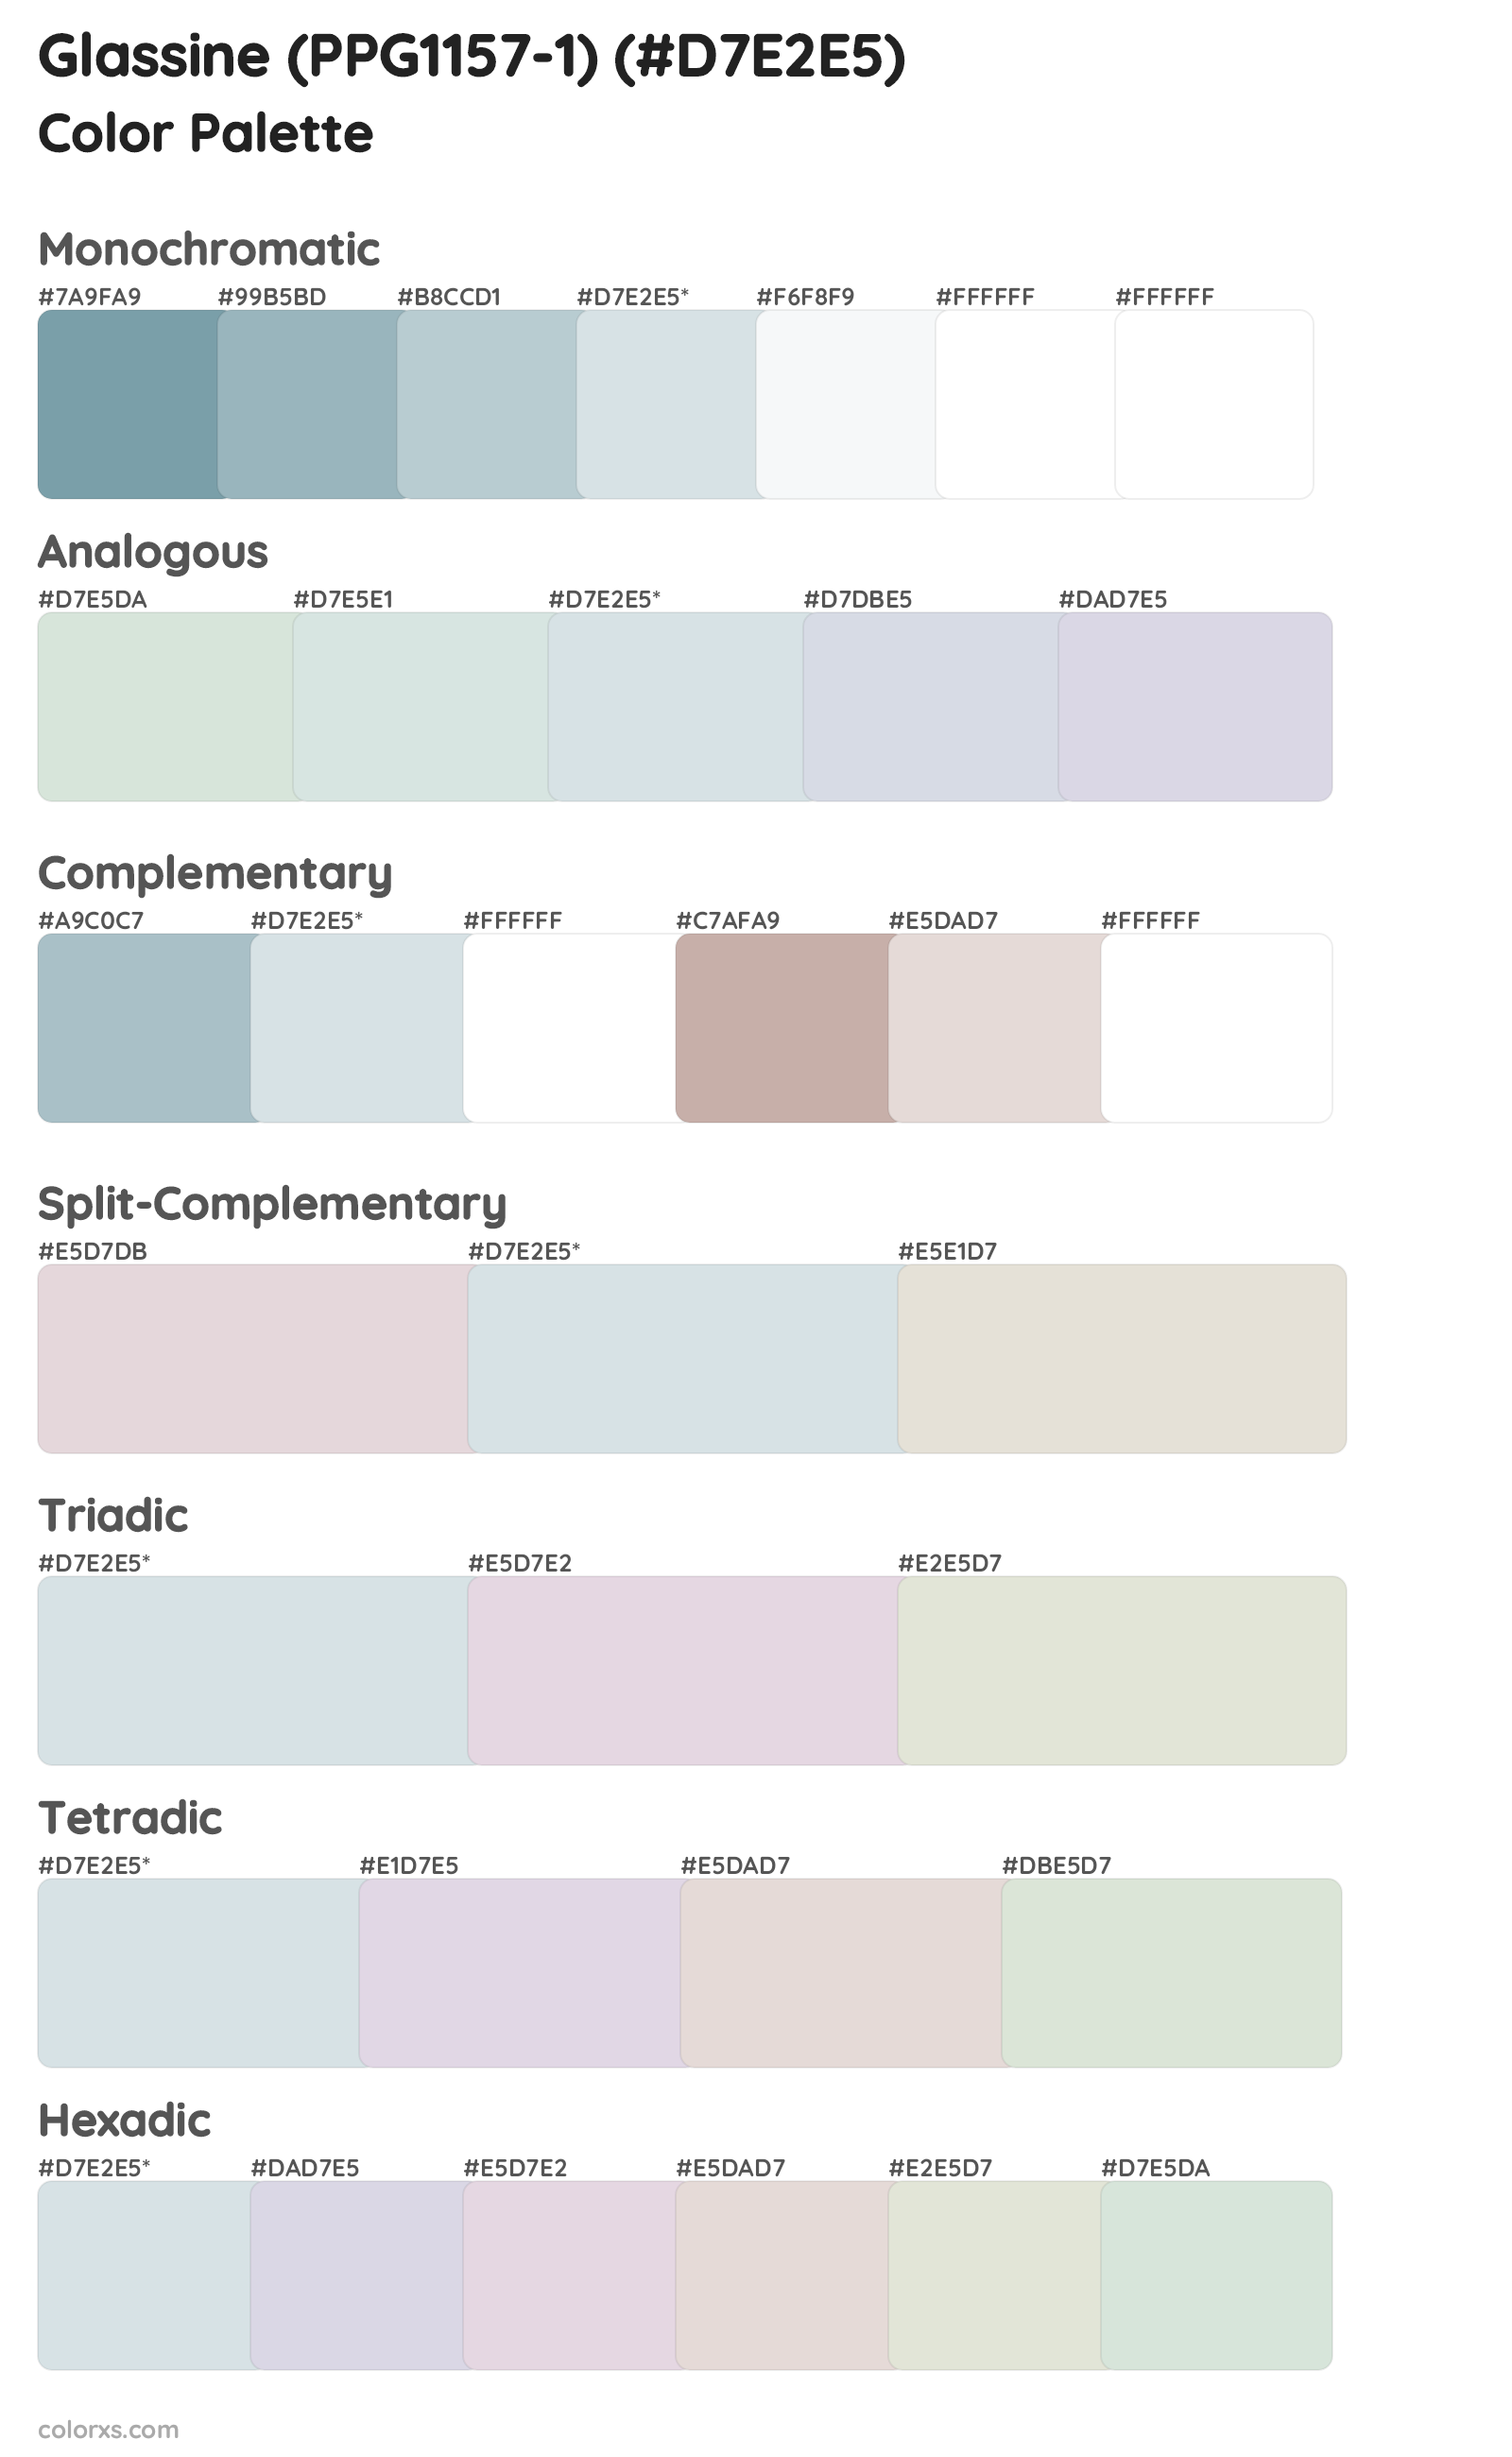 Glassine (PPG1157-1) Color Scheme Palettes